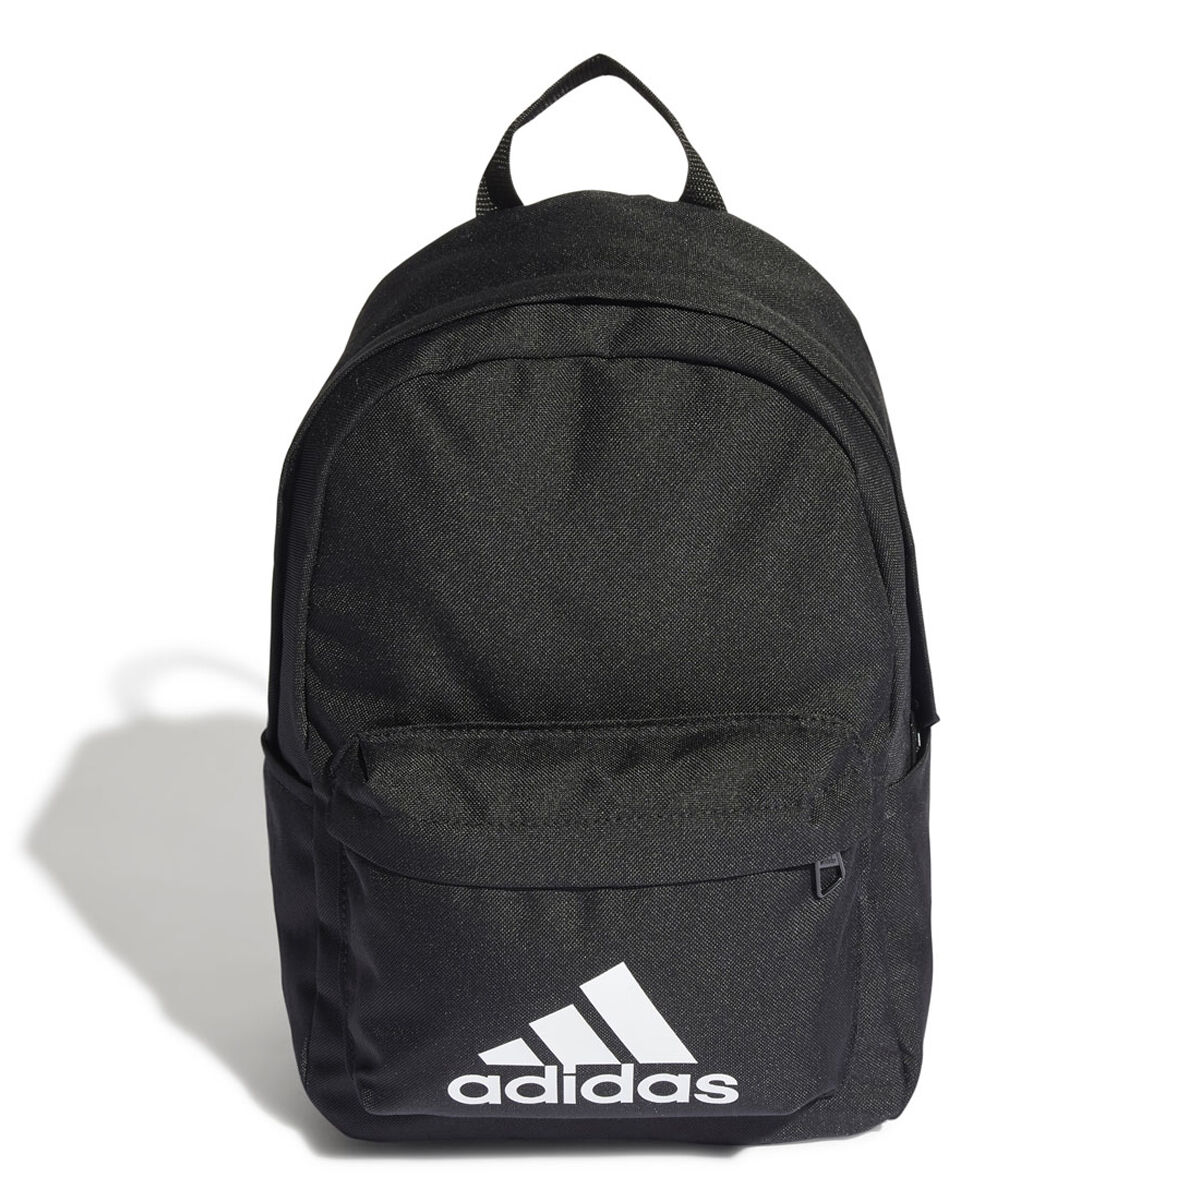 Kids School Bags - Nike, adidas, PUMA Backpacks - rebel